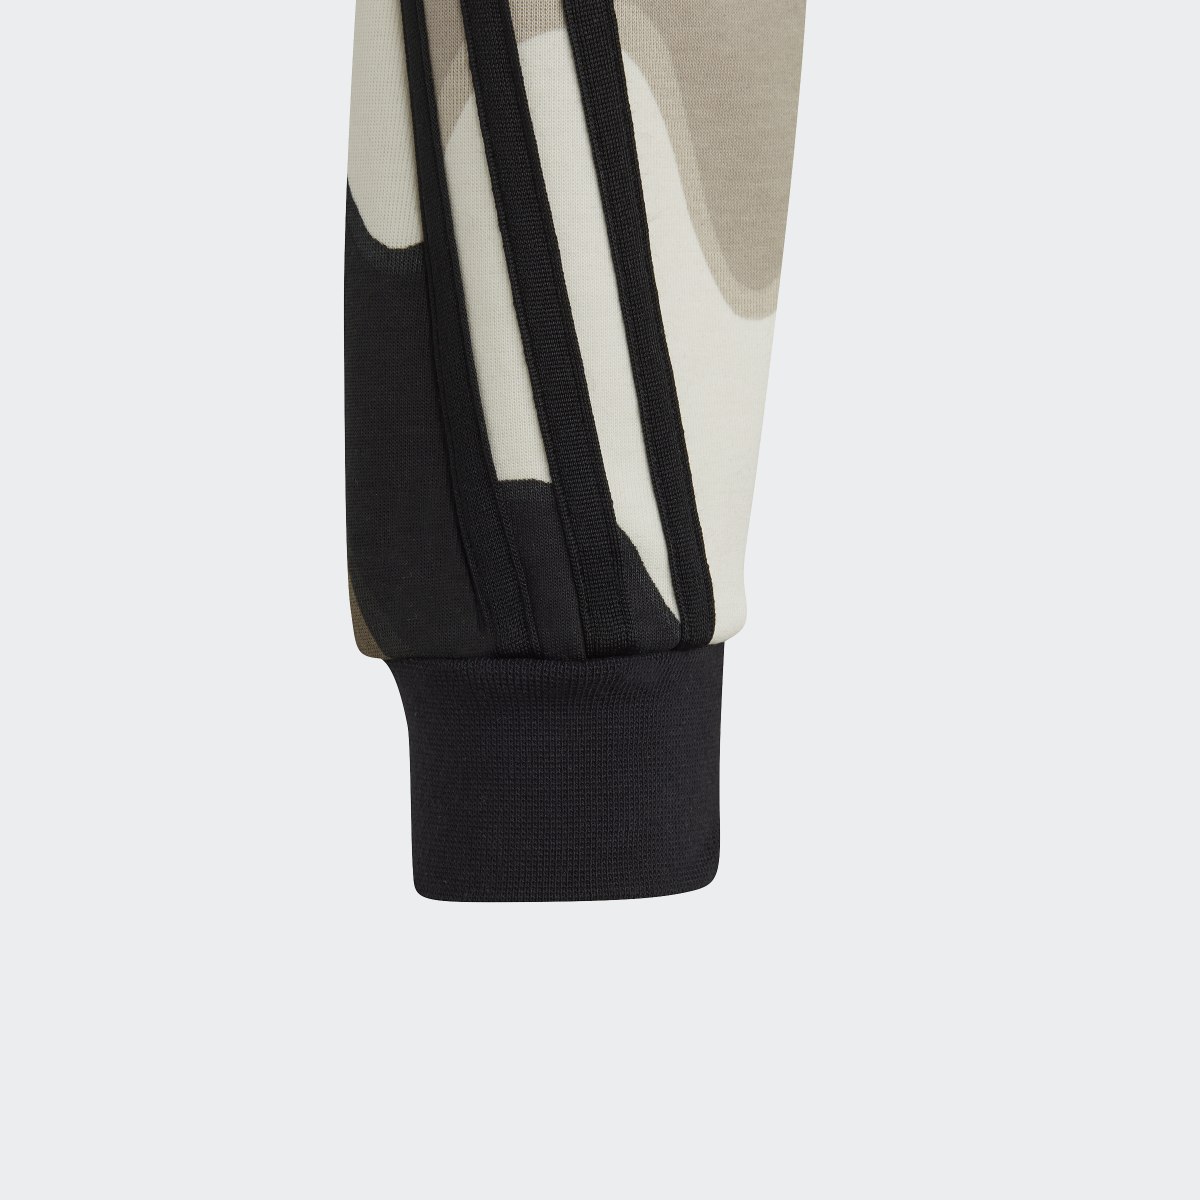 Adidas Marimekko Allover Print Cotton Sweatshirt. 4